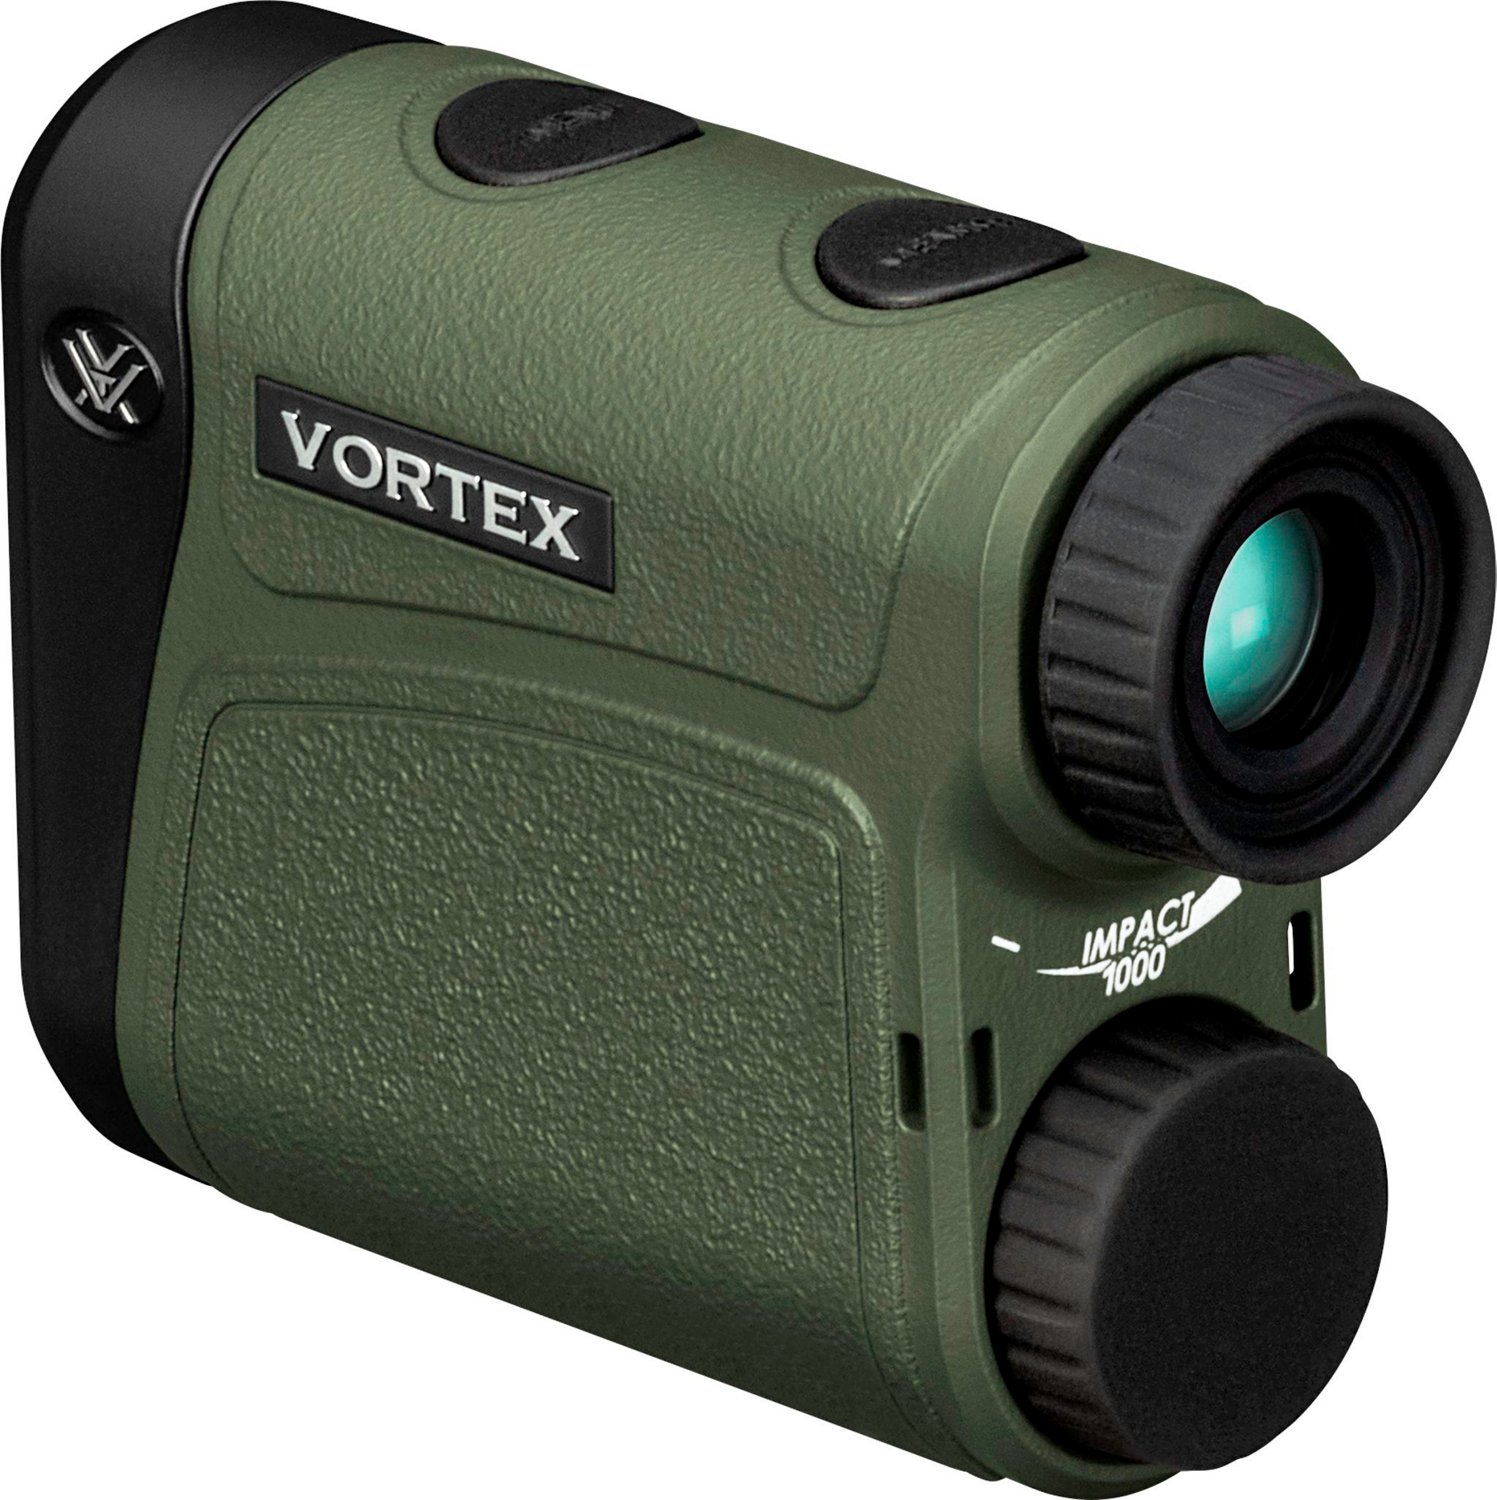 Vortex Impact 1000 6x Laser Range Finder | Academy